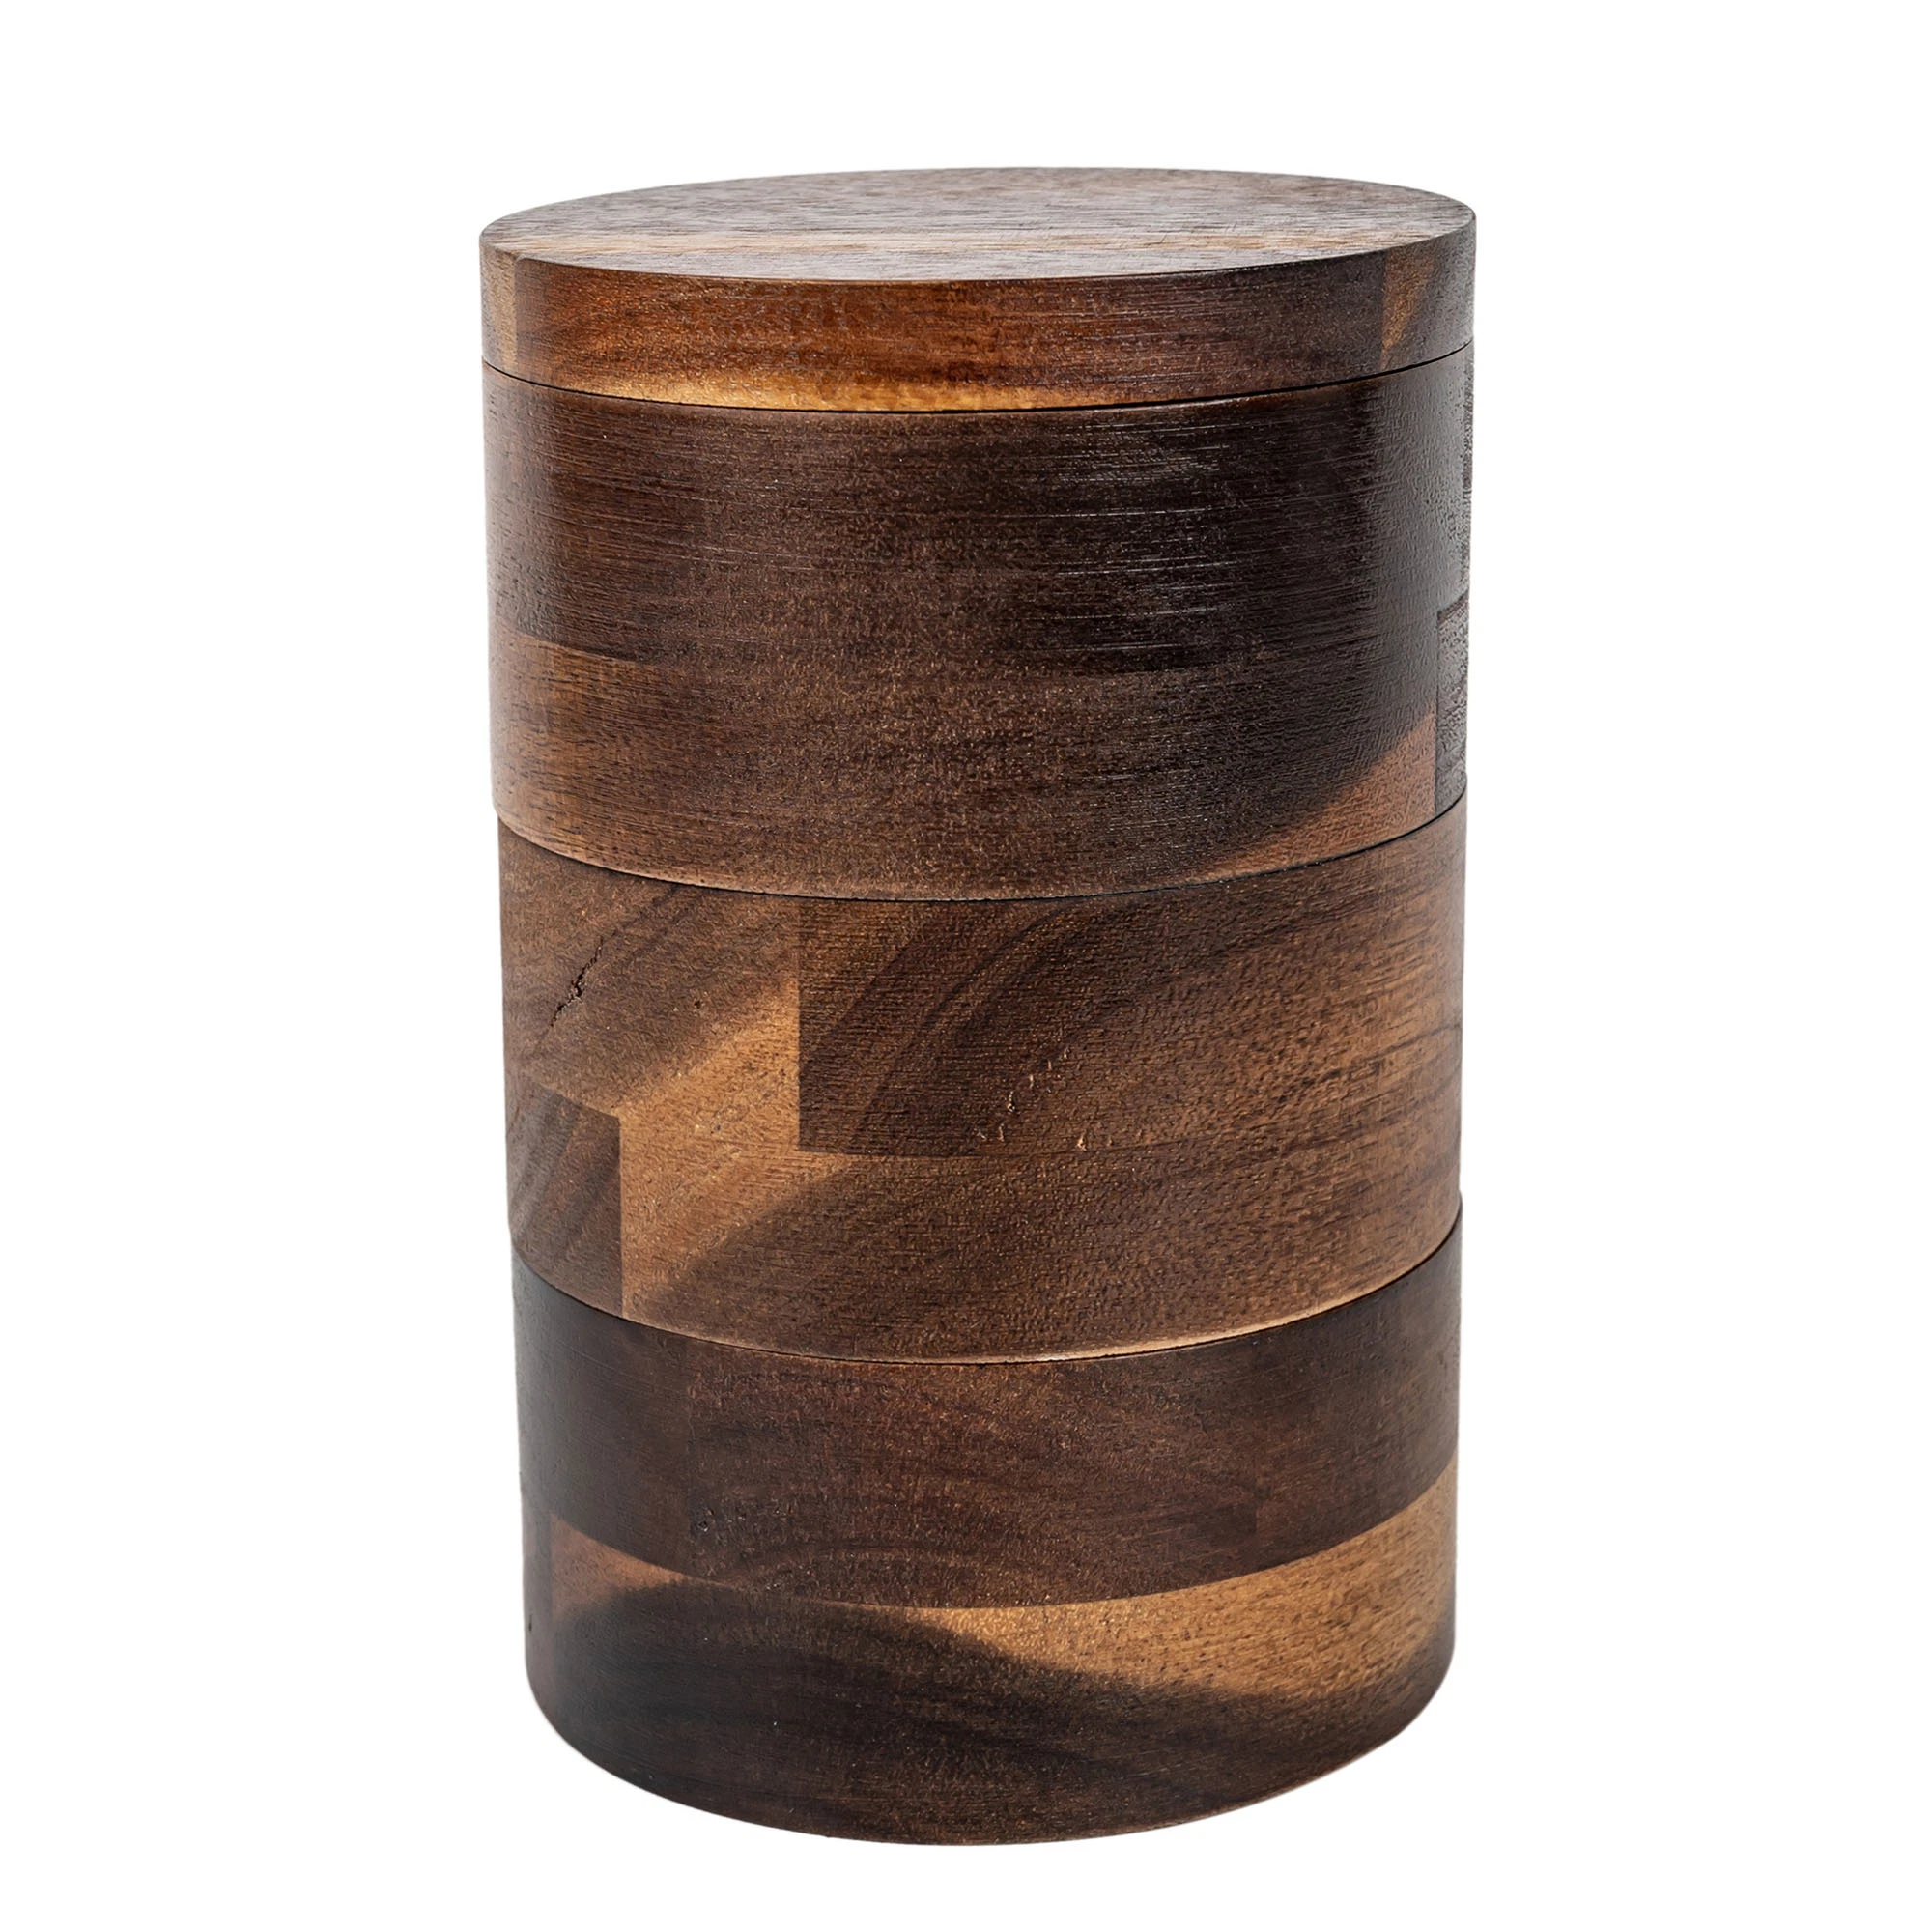 3-ярус Bamboo Деревянный стеллажи контейнер для солевой коробки надежное хранение и организация - Сезонные, пряники, травы или мелкий предмет